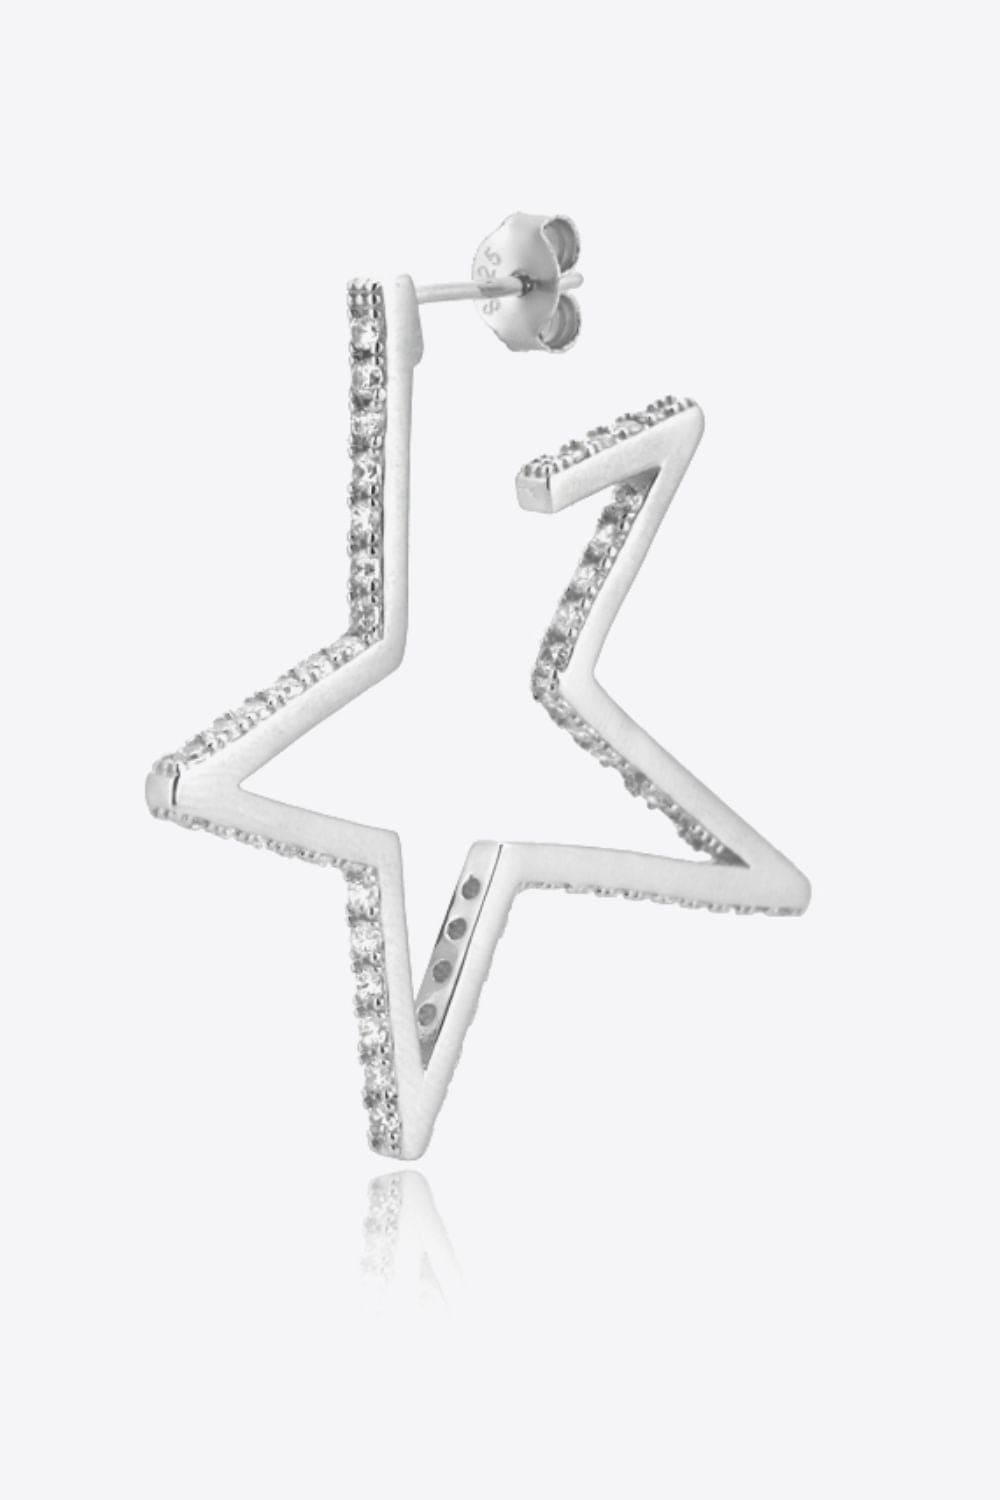 Zircon Star 925 Sterling Silver Earrings COCO CRESS